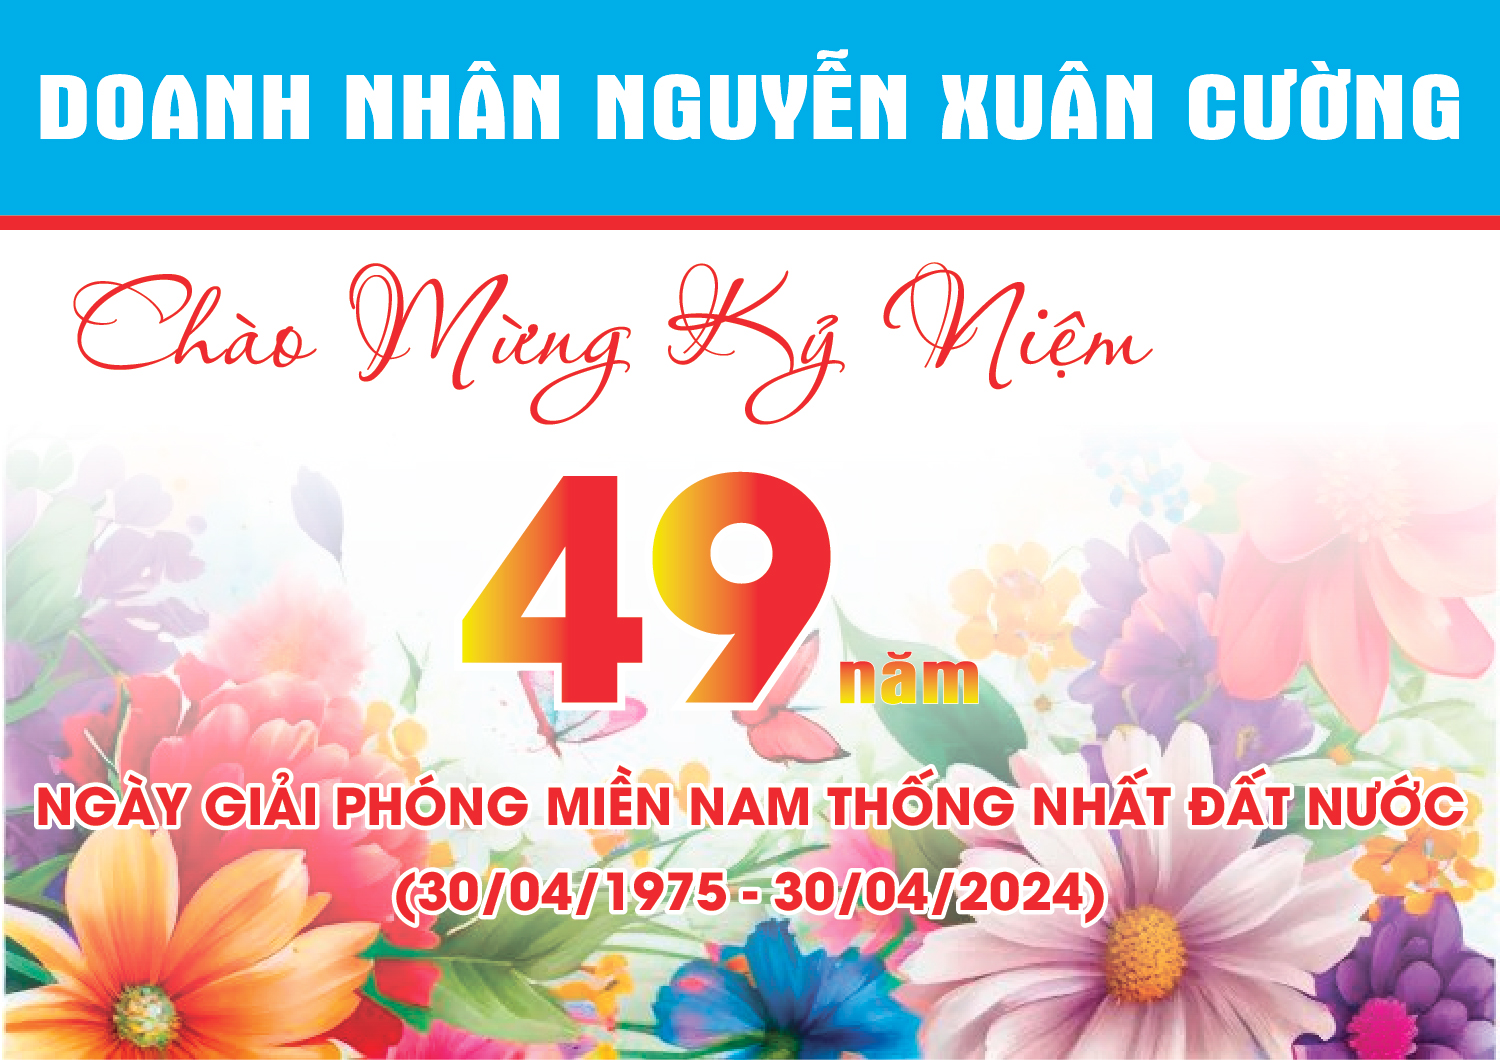 Doanh nhân Nguyễn Xuân Cường